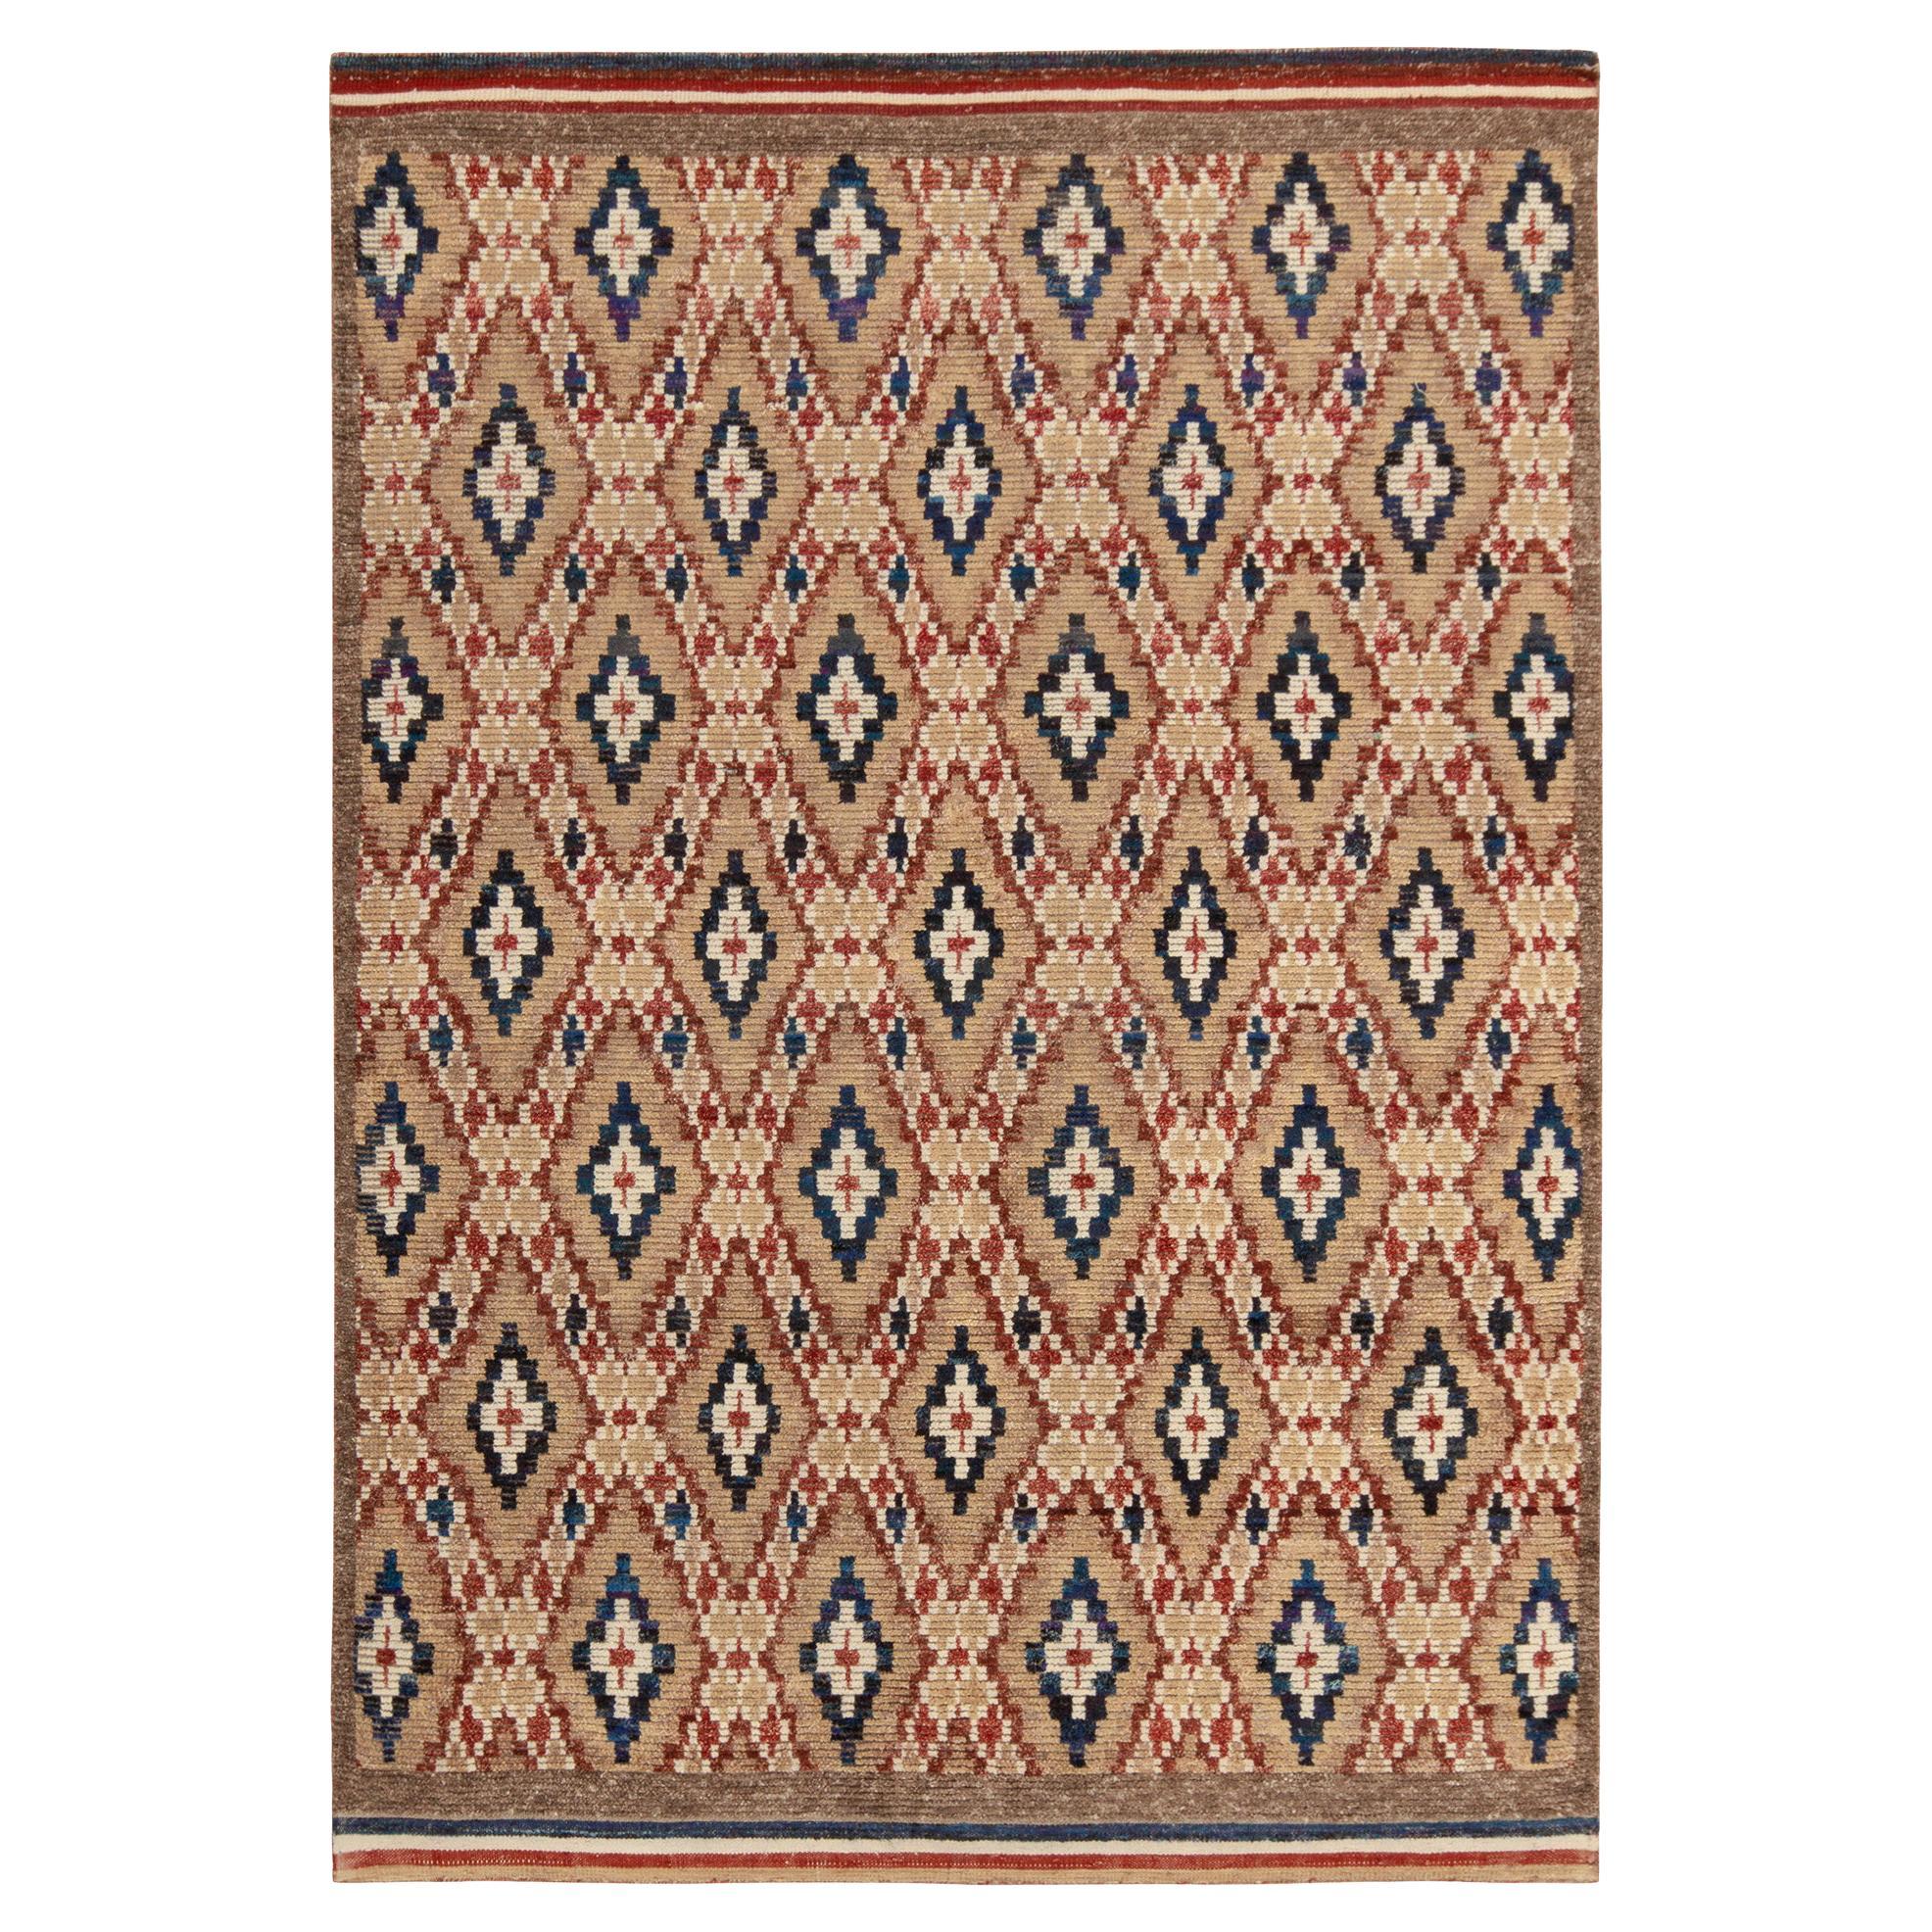 Marokkanischer Teppich von Rug & Kilim in Beige-Braun, Rot und Blau mit Rautenmustern im Angebot